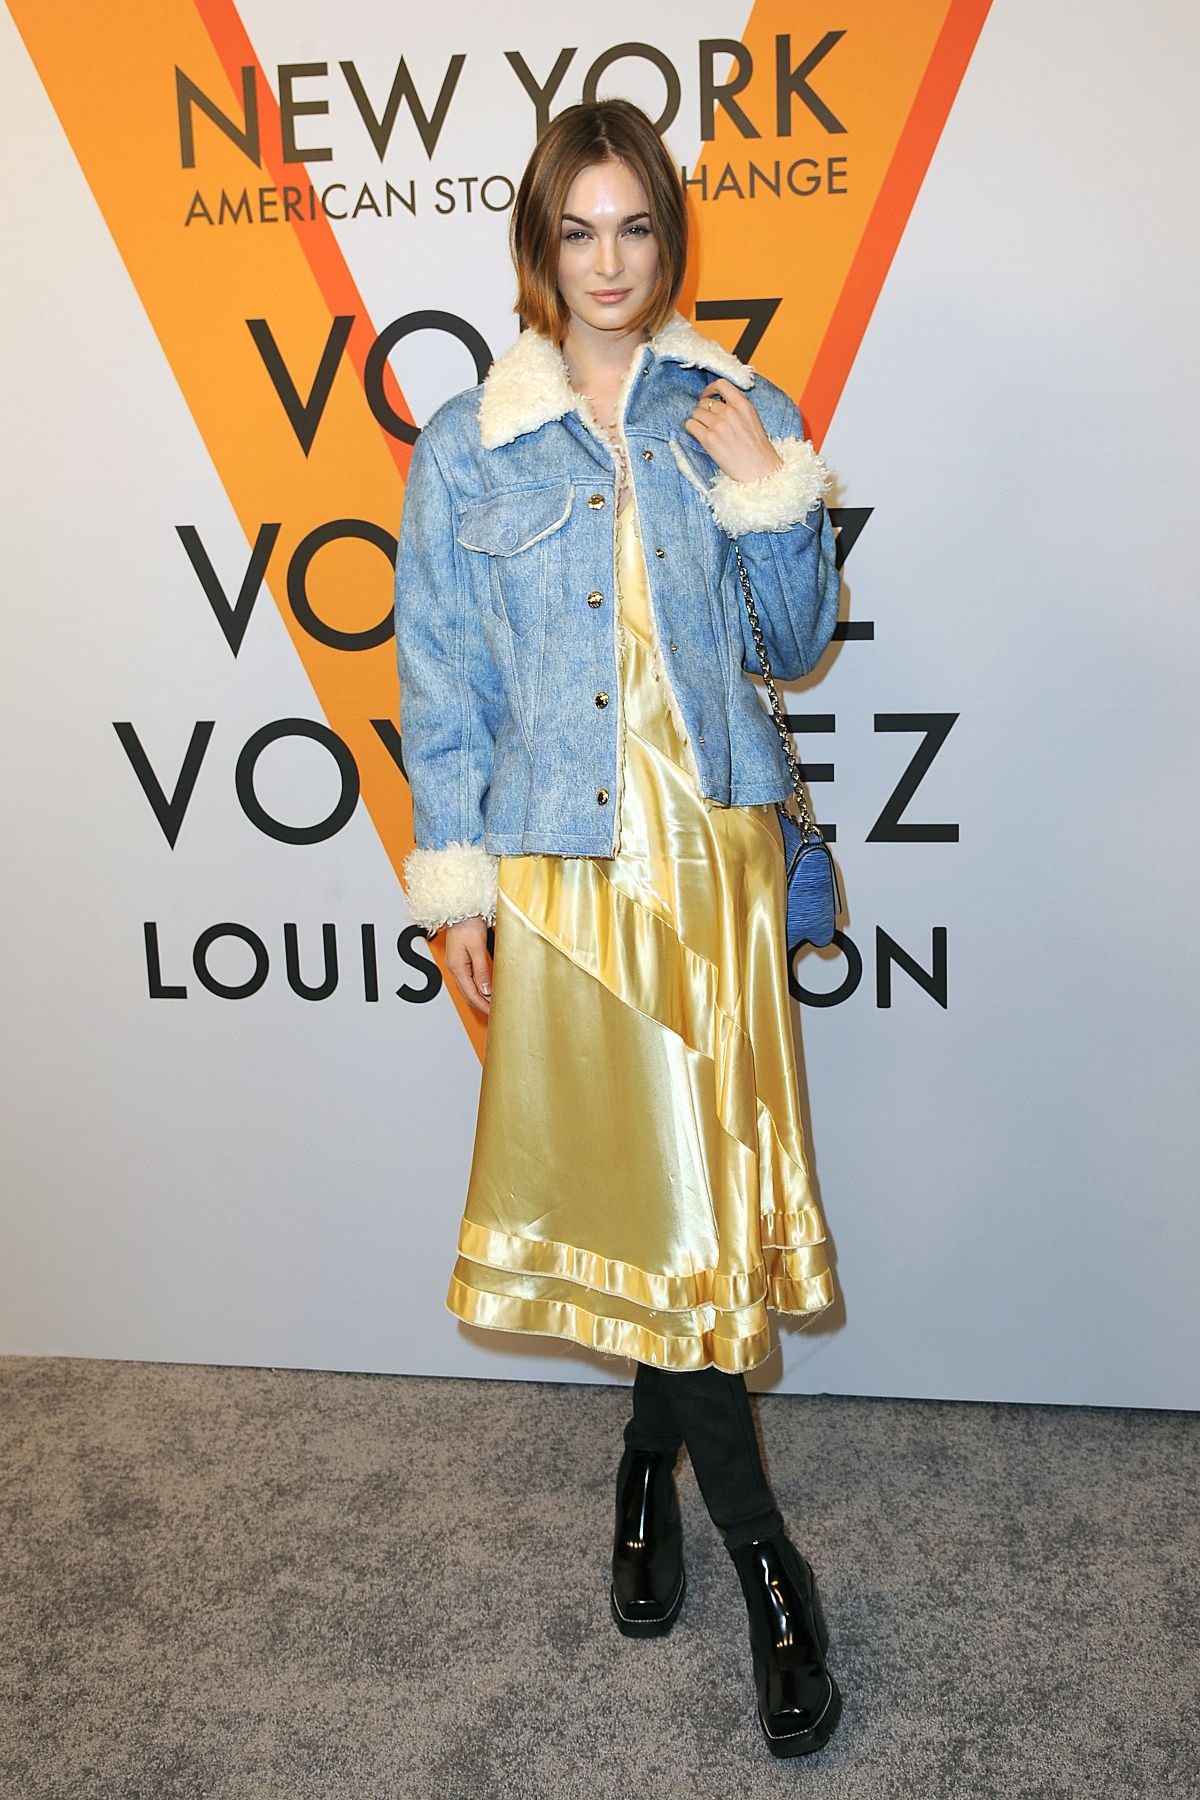 Louis Vuitton Volez, Voguez, Voyagez Exhibition in New York City - Simply  Sinova